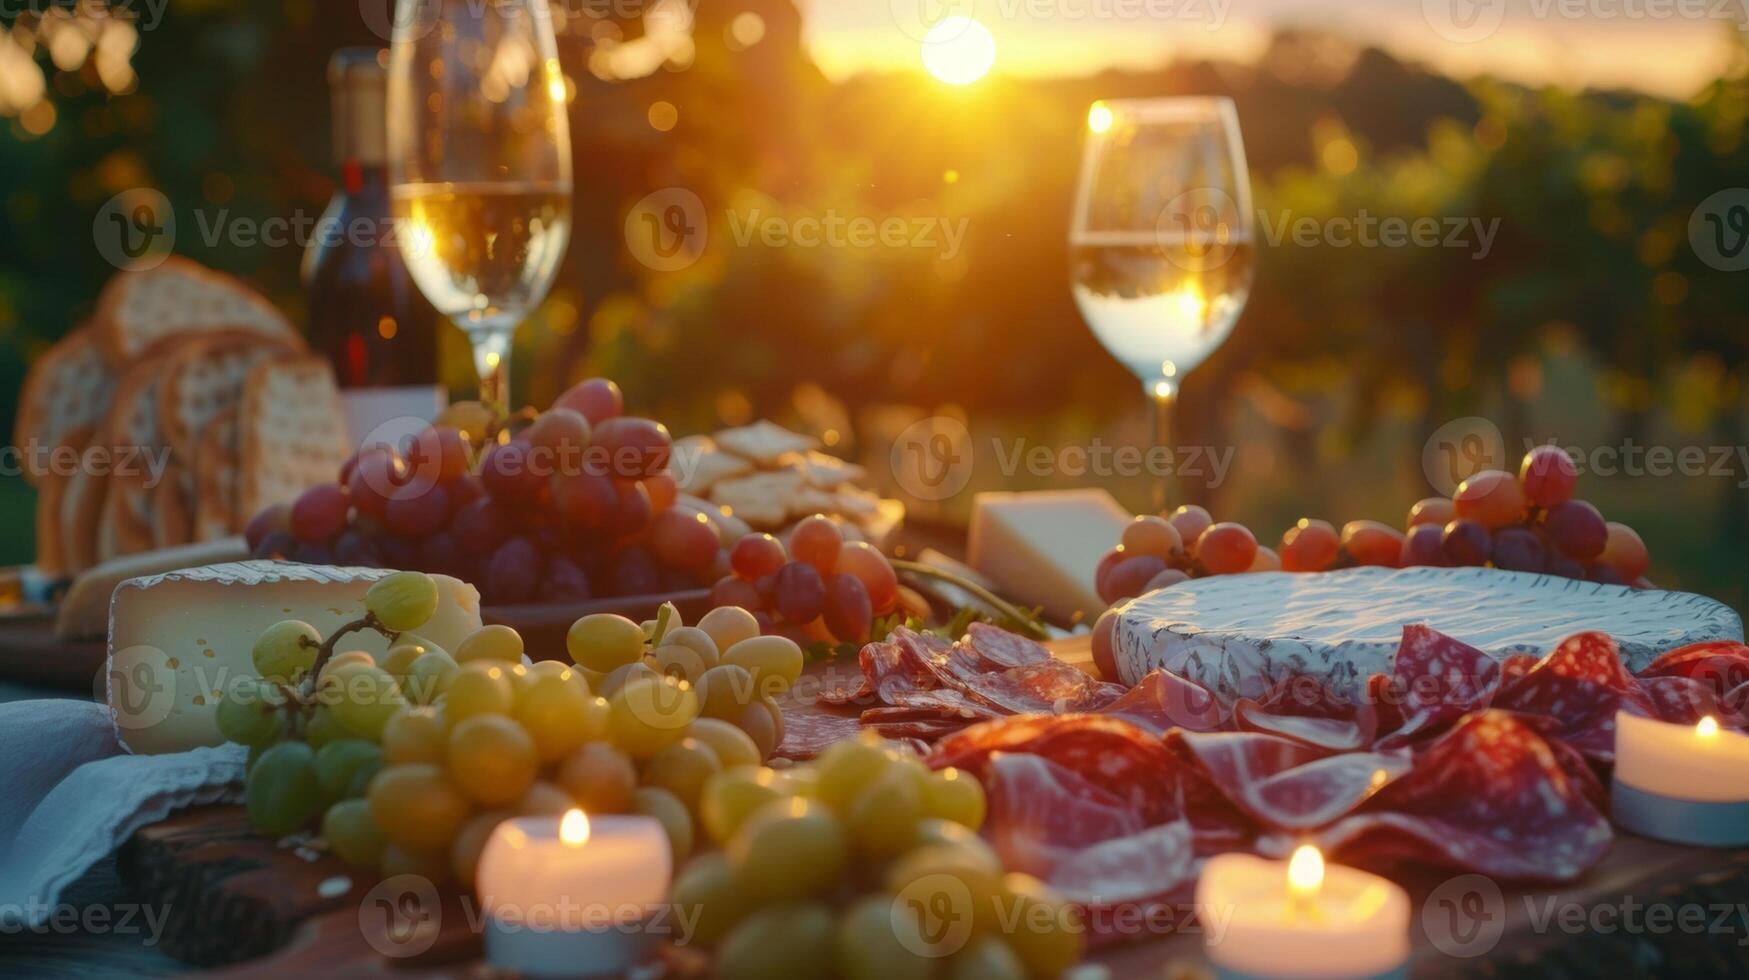 comme le Soleil ensembles le bougies devenir le primaire la source de lumière fabrication le du vin et fromage propager même plus séduisant et appétissant. 2d plat dessin animé photo